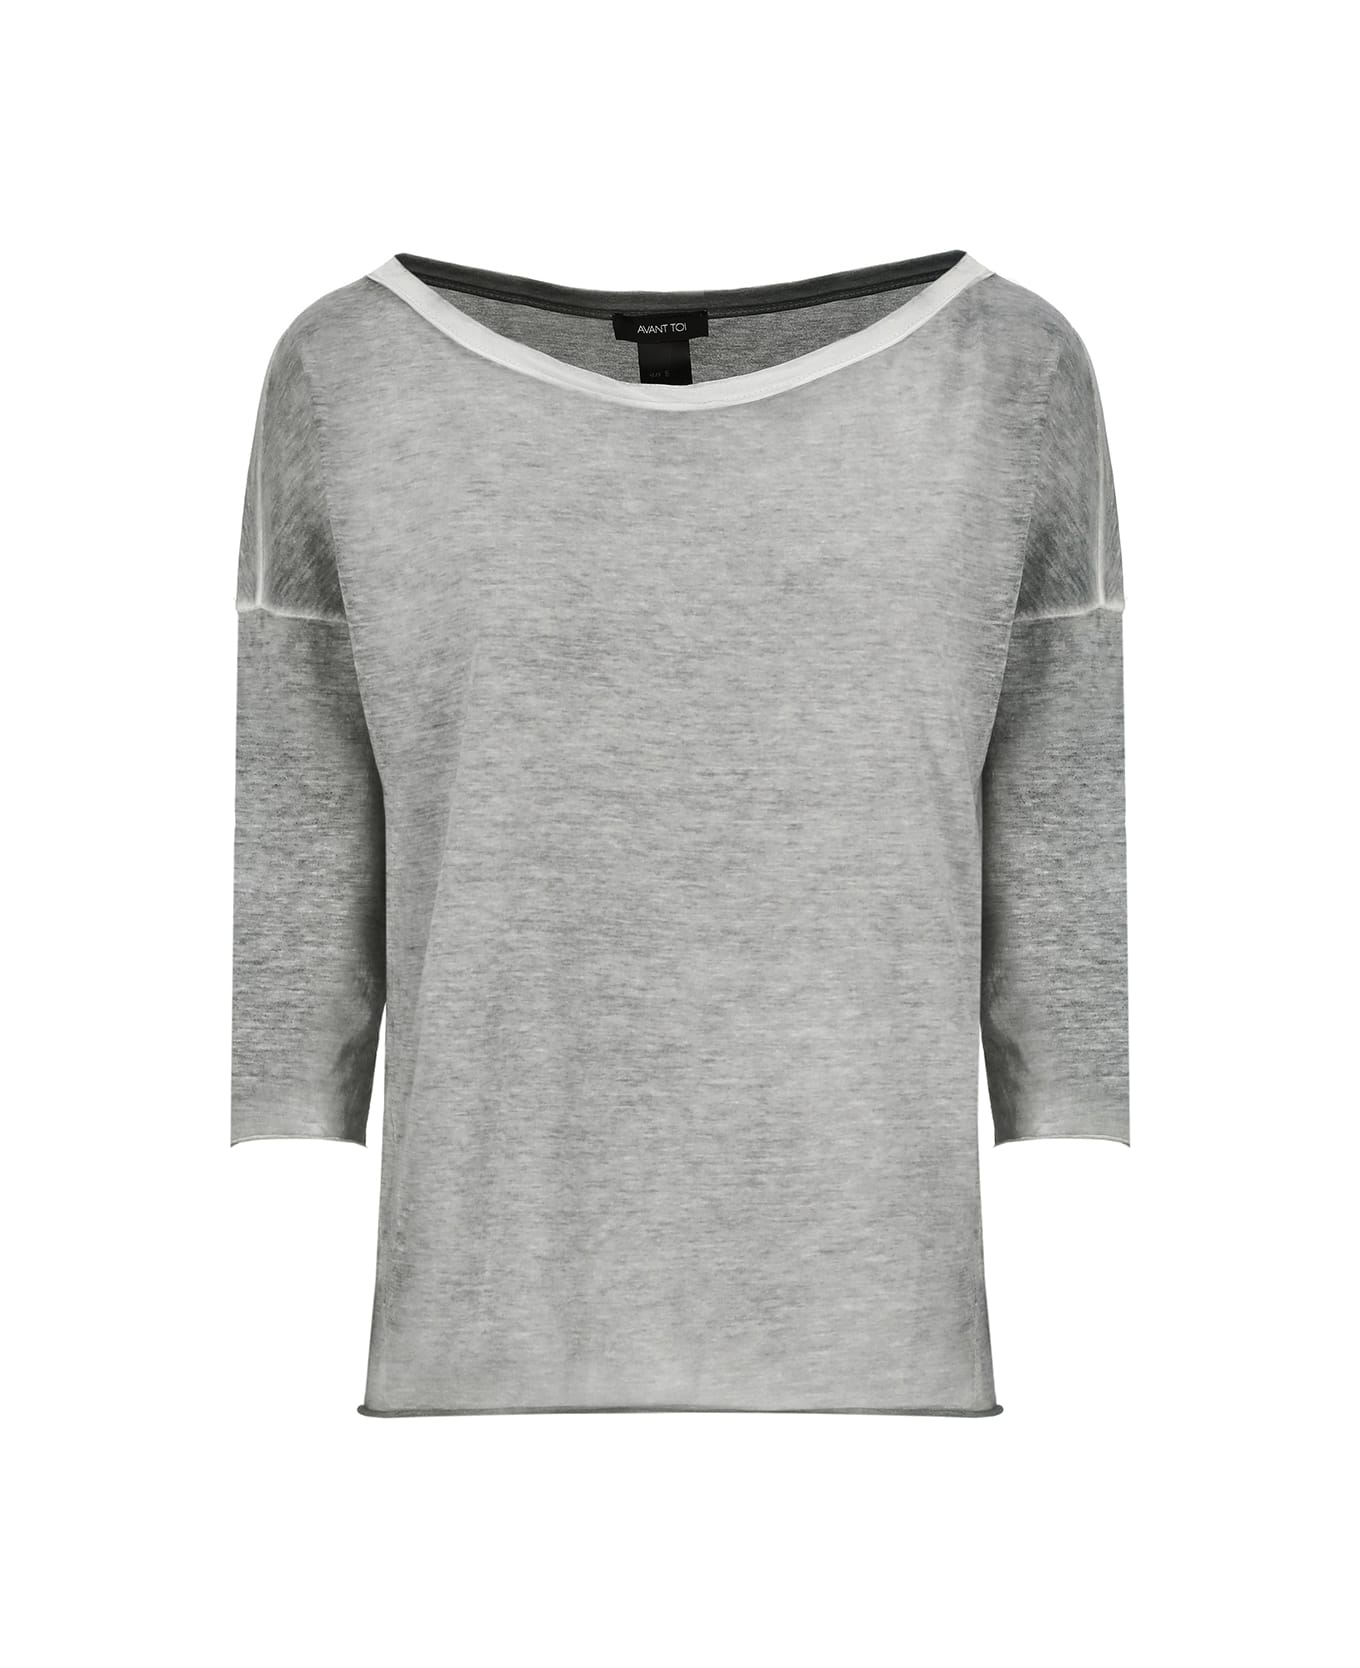 Avant Toi Cotton Sweater - Grey ニットウェア